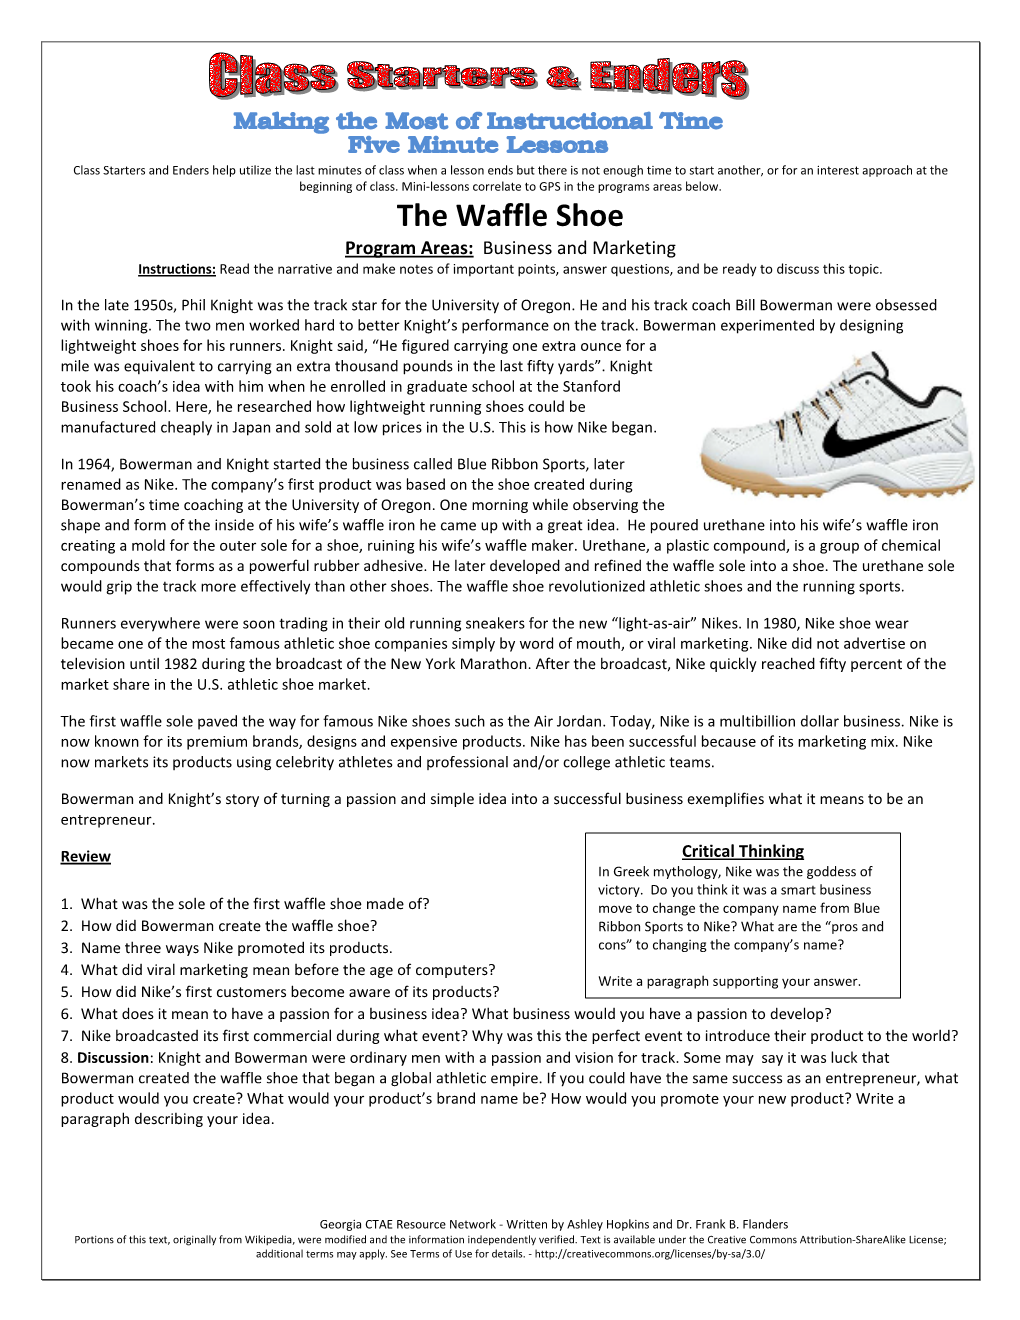 The Waffle Shoe